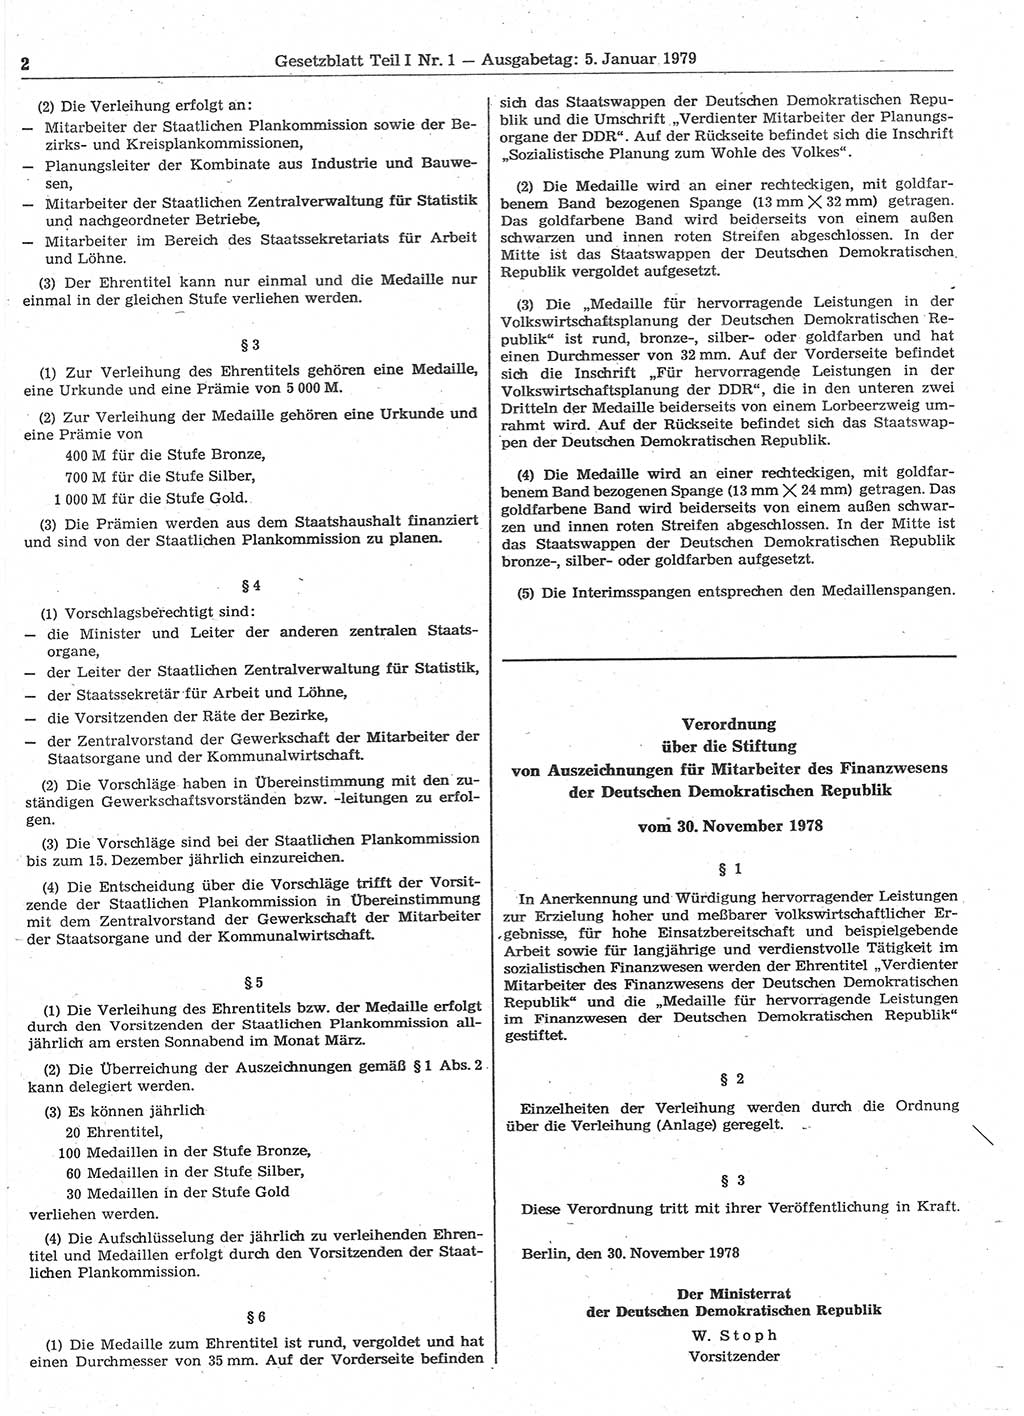 Gesetzblatt (GBl.) der Deutschen Demokratischen Republik (DDR) Teil Ⅰ 1979, Seite 2 (GBl. DDR Ⅰ 1979, S. 2)